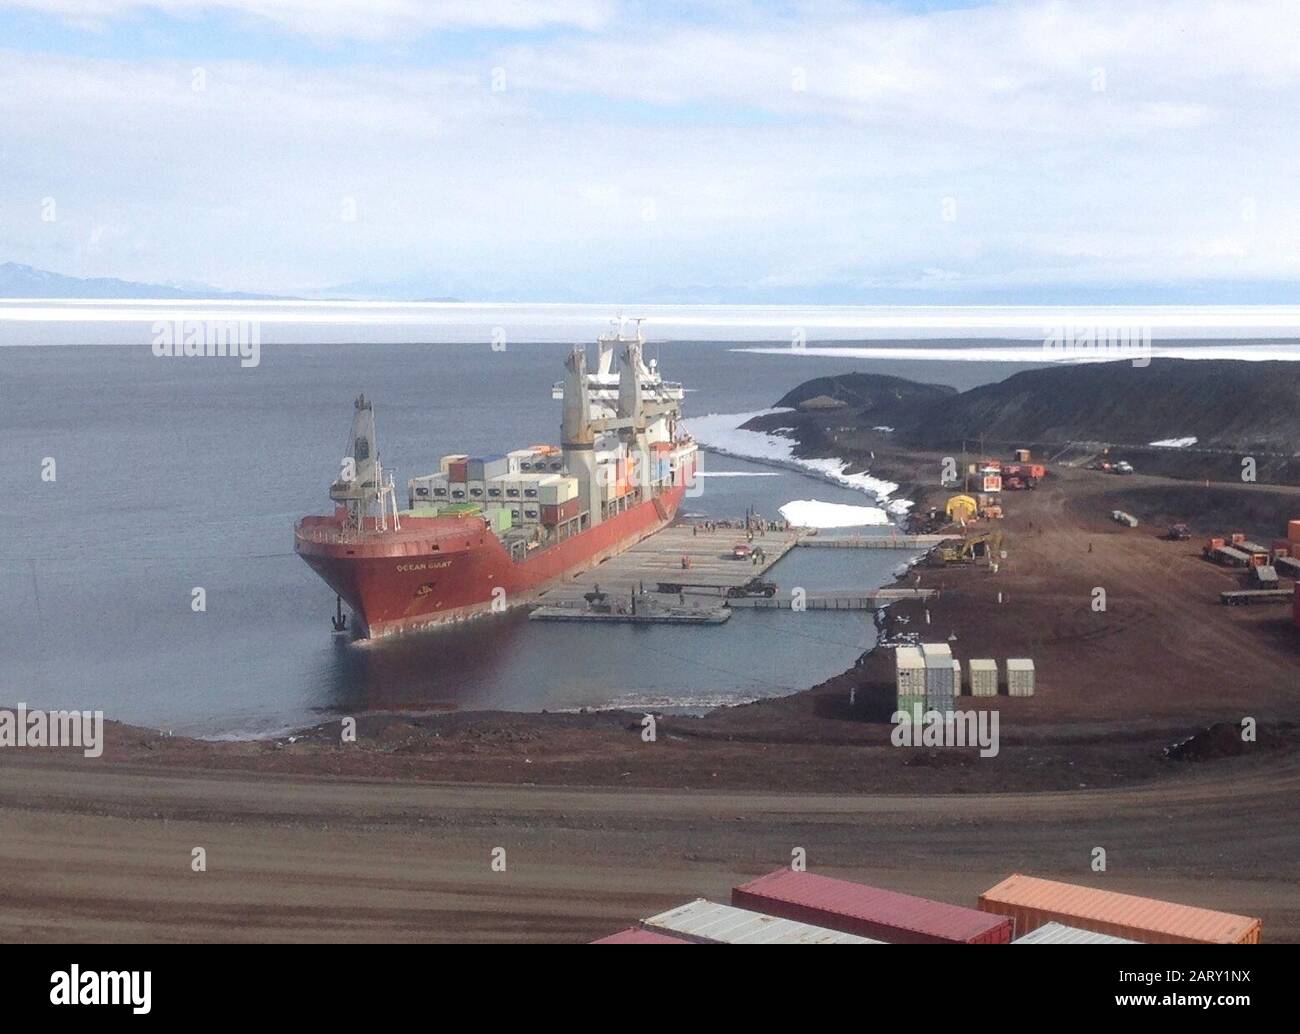 El buque de contenedores con el mando de Sealift Militar MV Ocean Giant conduce cargas de carga en la estación McMurdo, Antártida. La operación forma parte de la misión anual de reabastecimiento del MSC en apoyo de la operación congelación Profunda, la misión conjunta de apoyo del Grupo de tareas para la Antártida para reabastecer el puesto remoto de científicos. Foto de stock